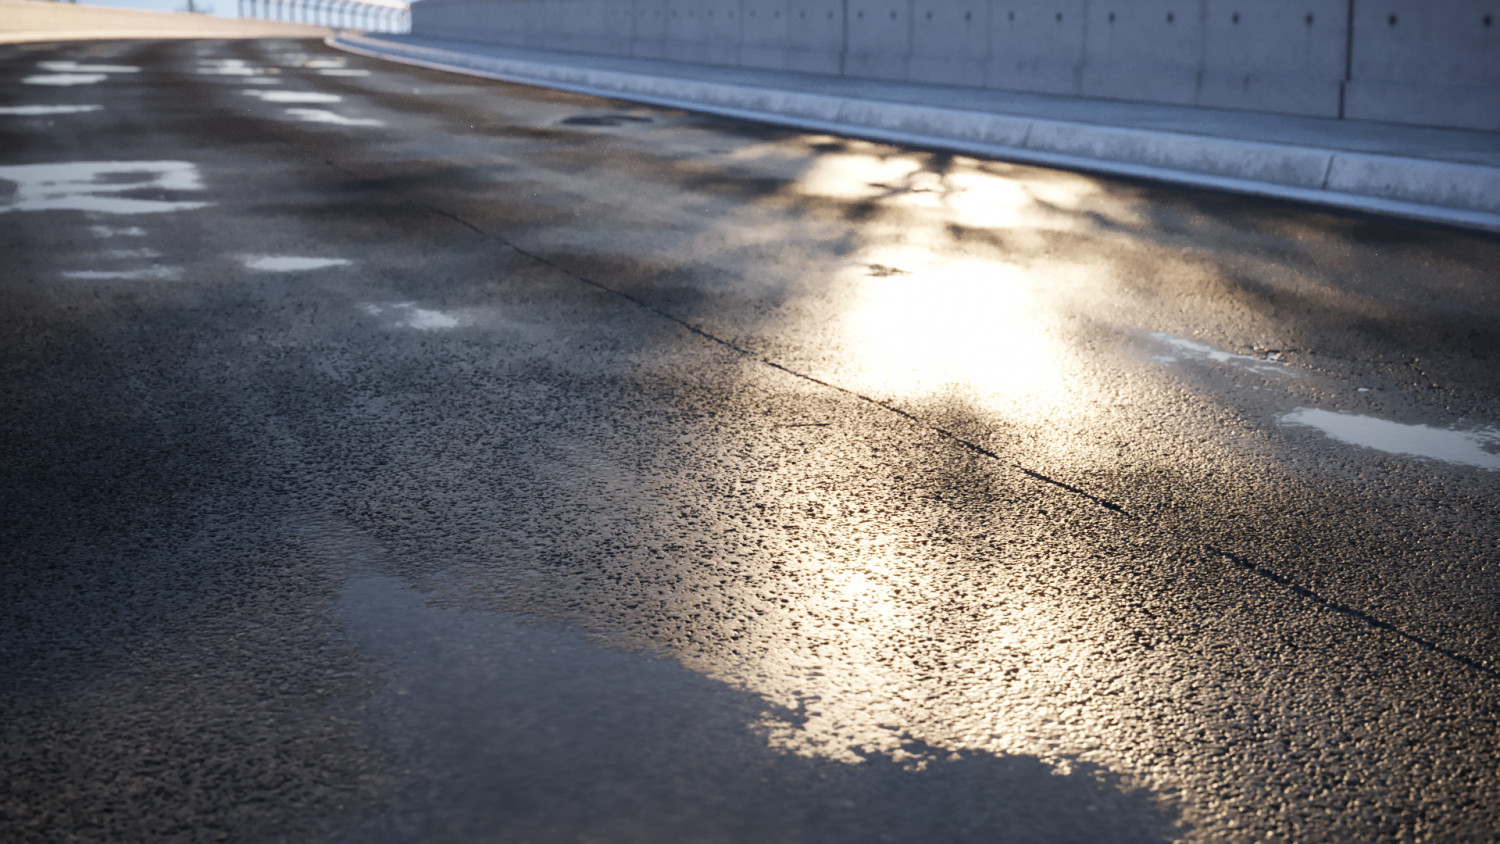 Wet damaged asphalt road  texture